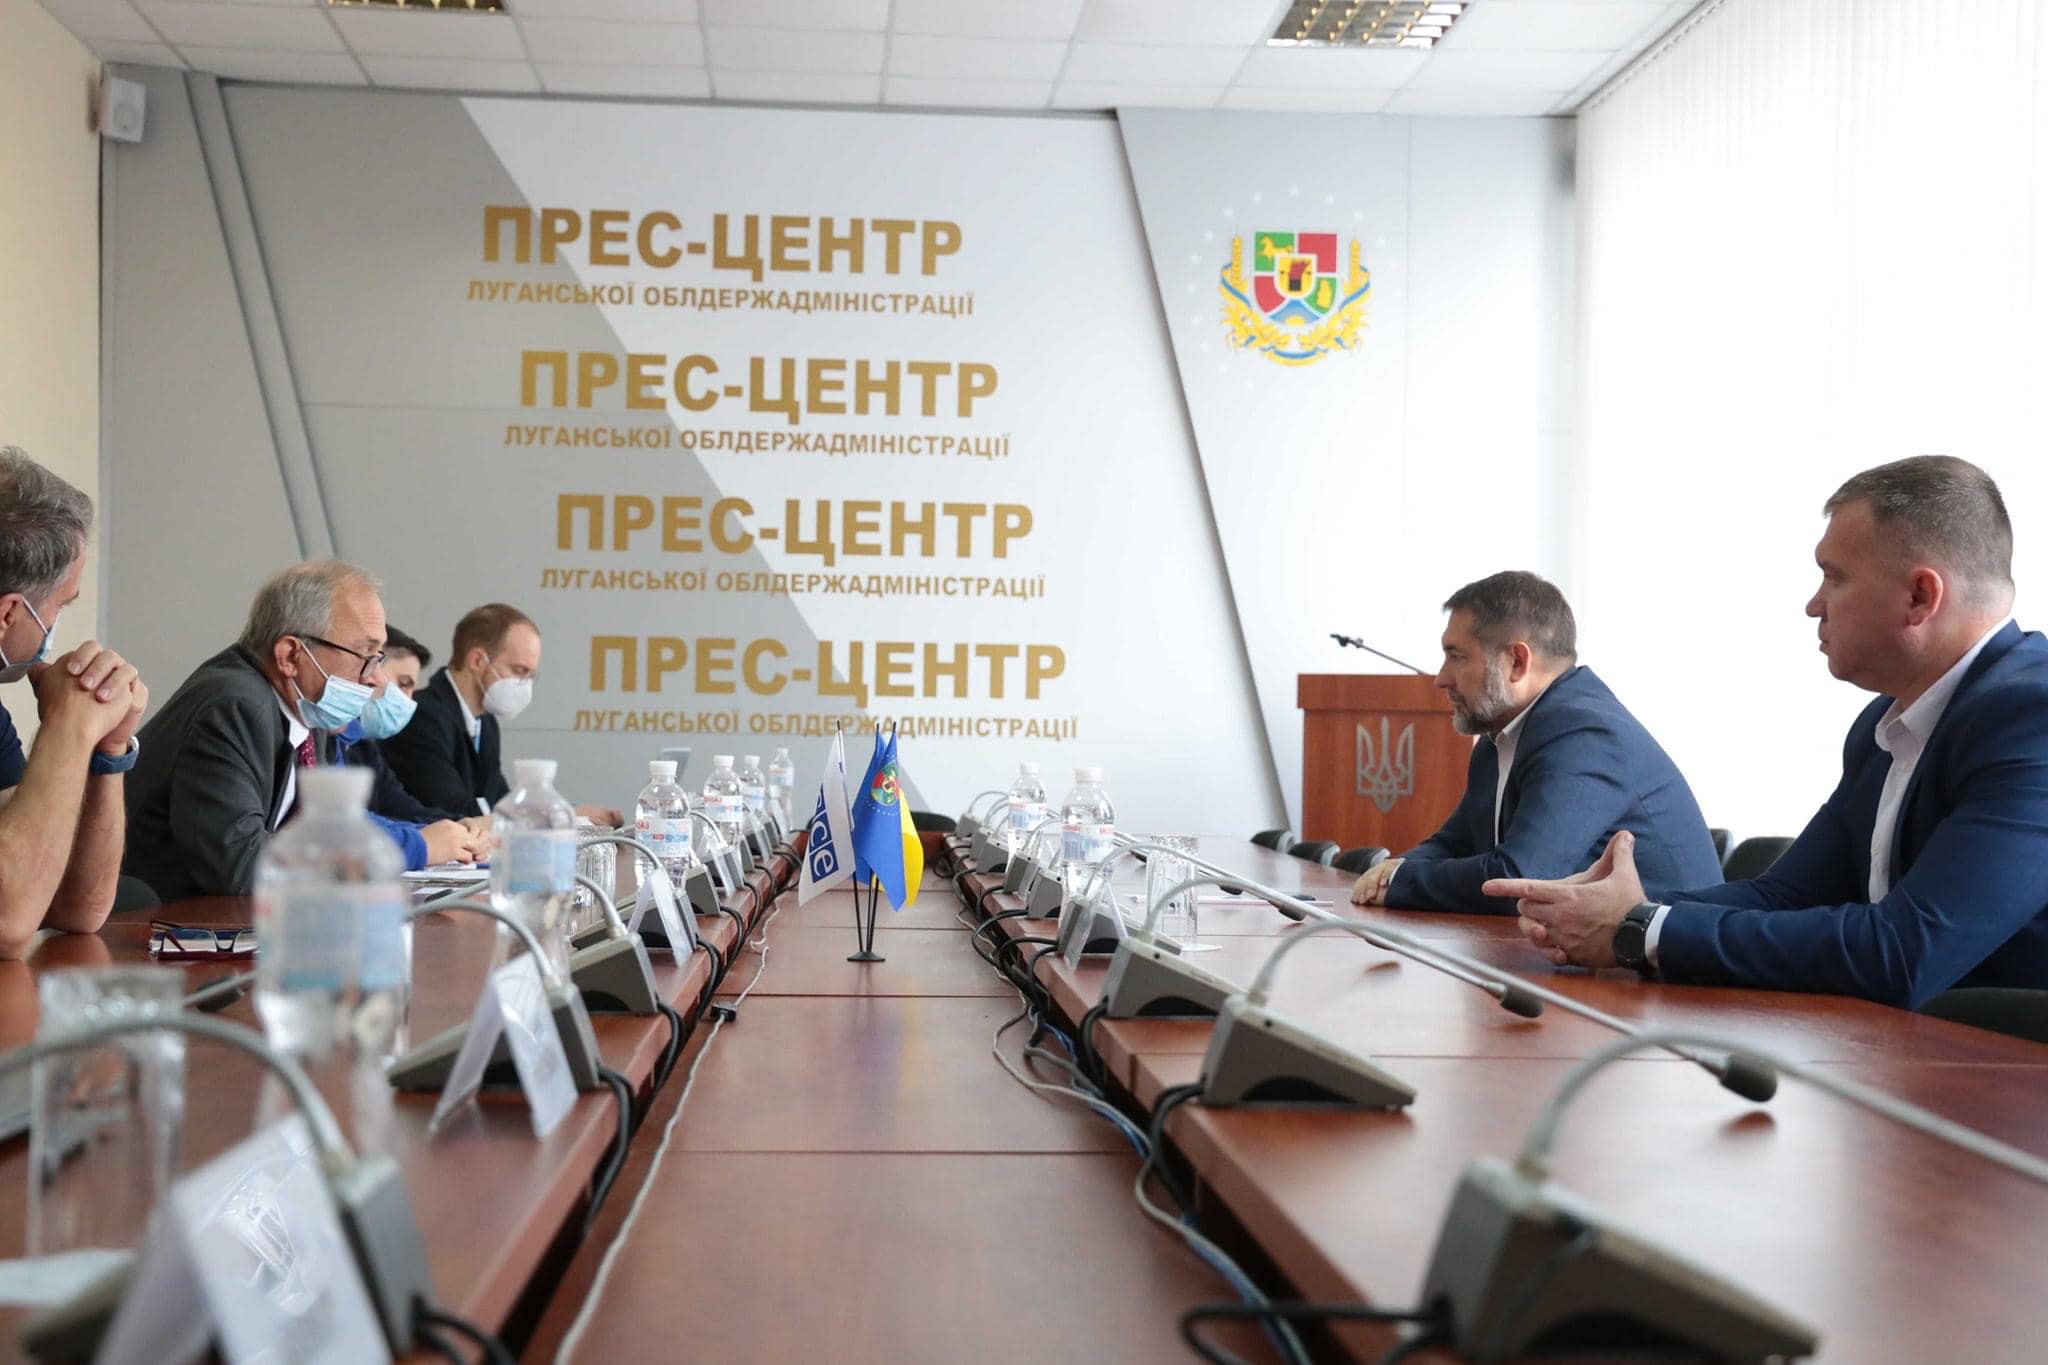 «Моніторинг безпекової ситуації в області – наше головне завдання», - наголосив Посол Яшар Халіт Чевік, Голова СММ ОБСЄ в Україні.